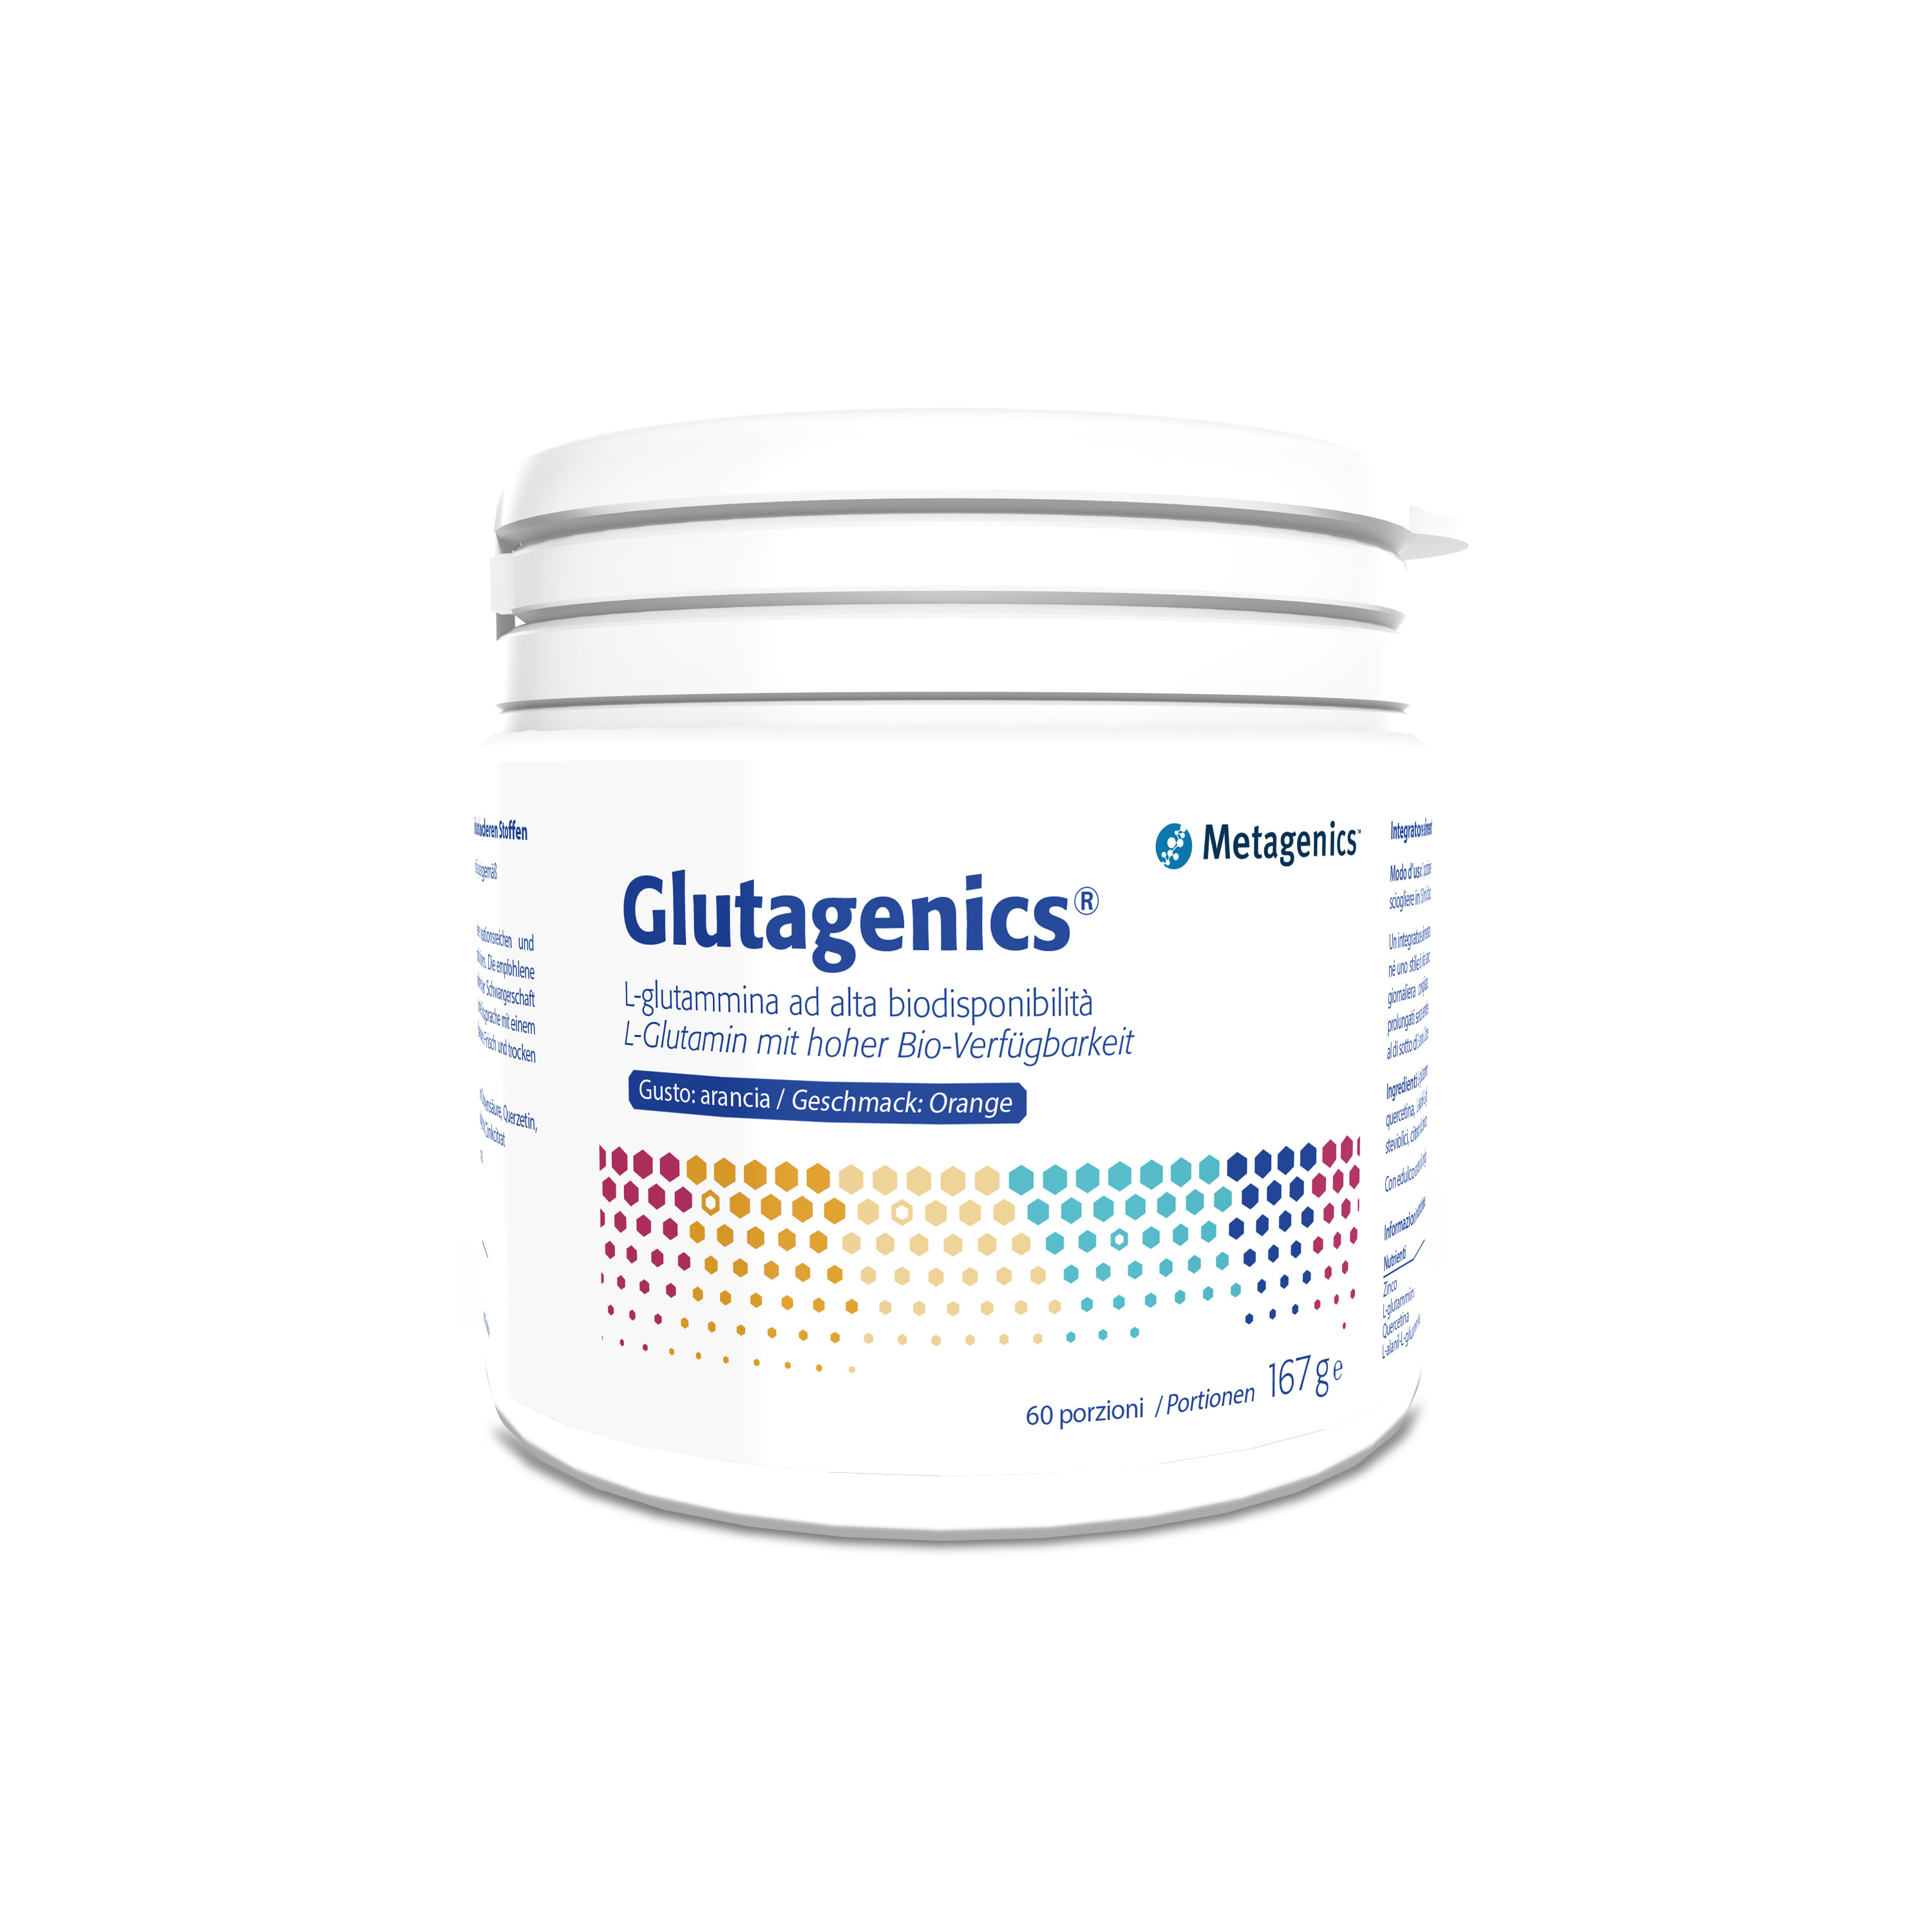 Glutagenics - Metagenics